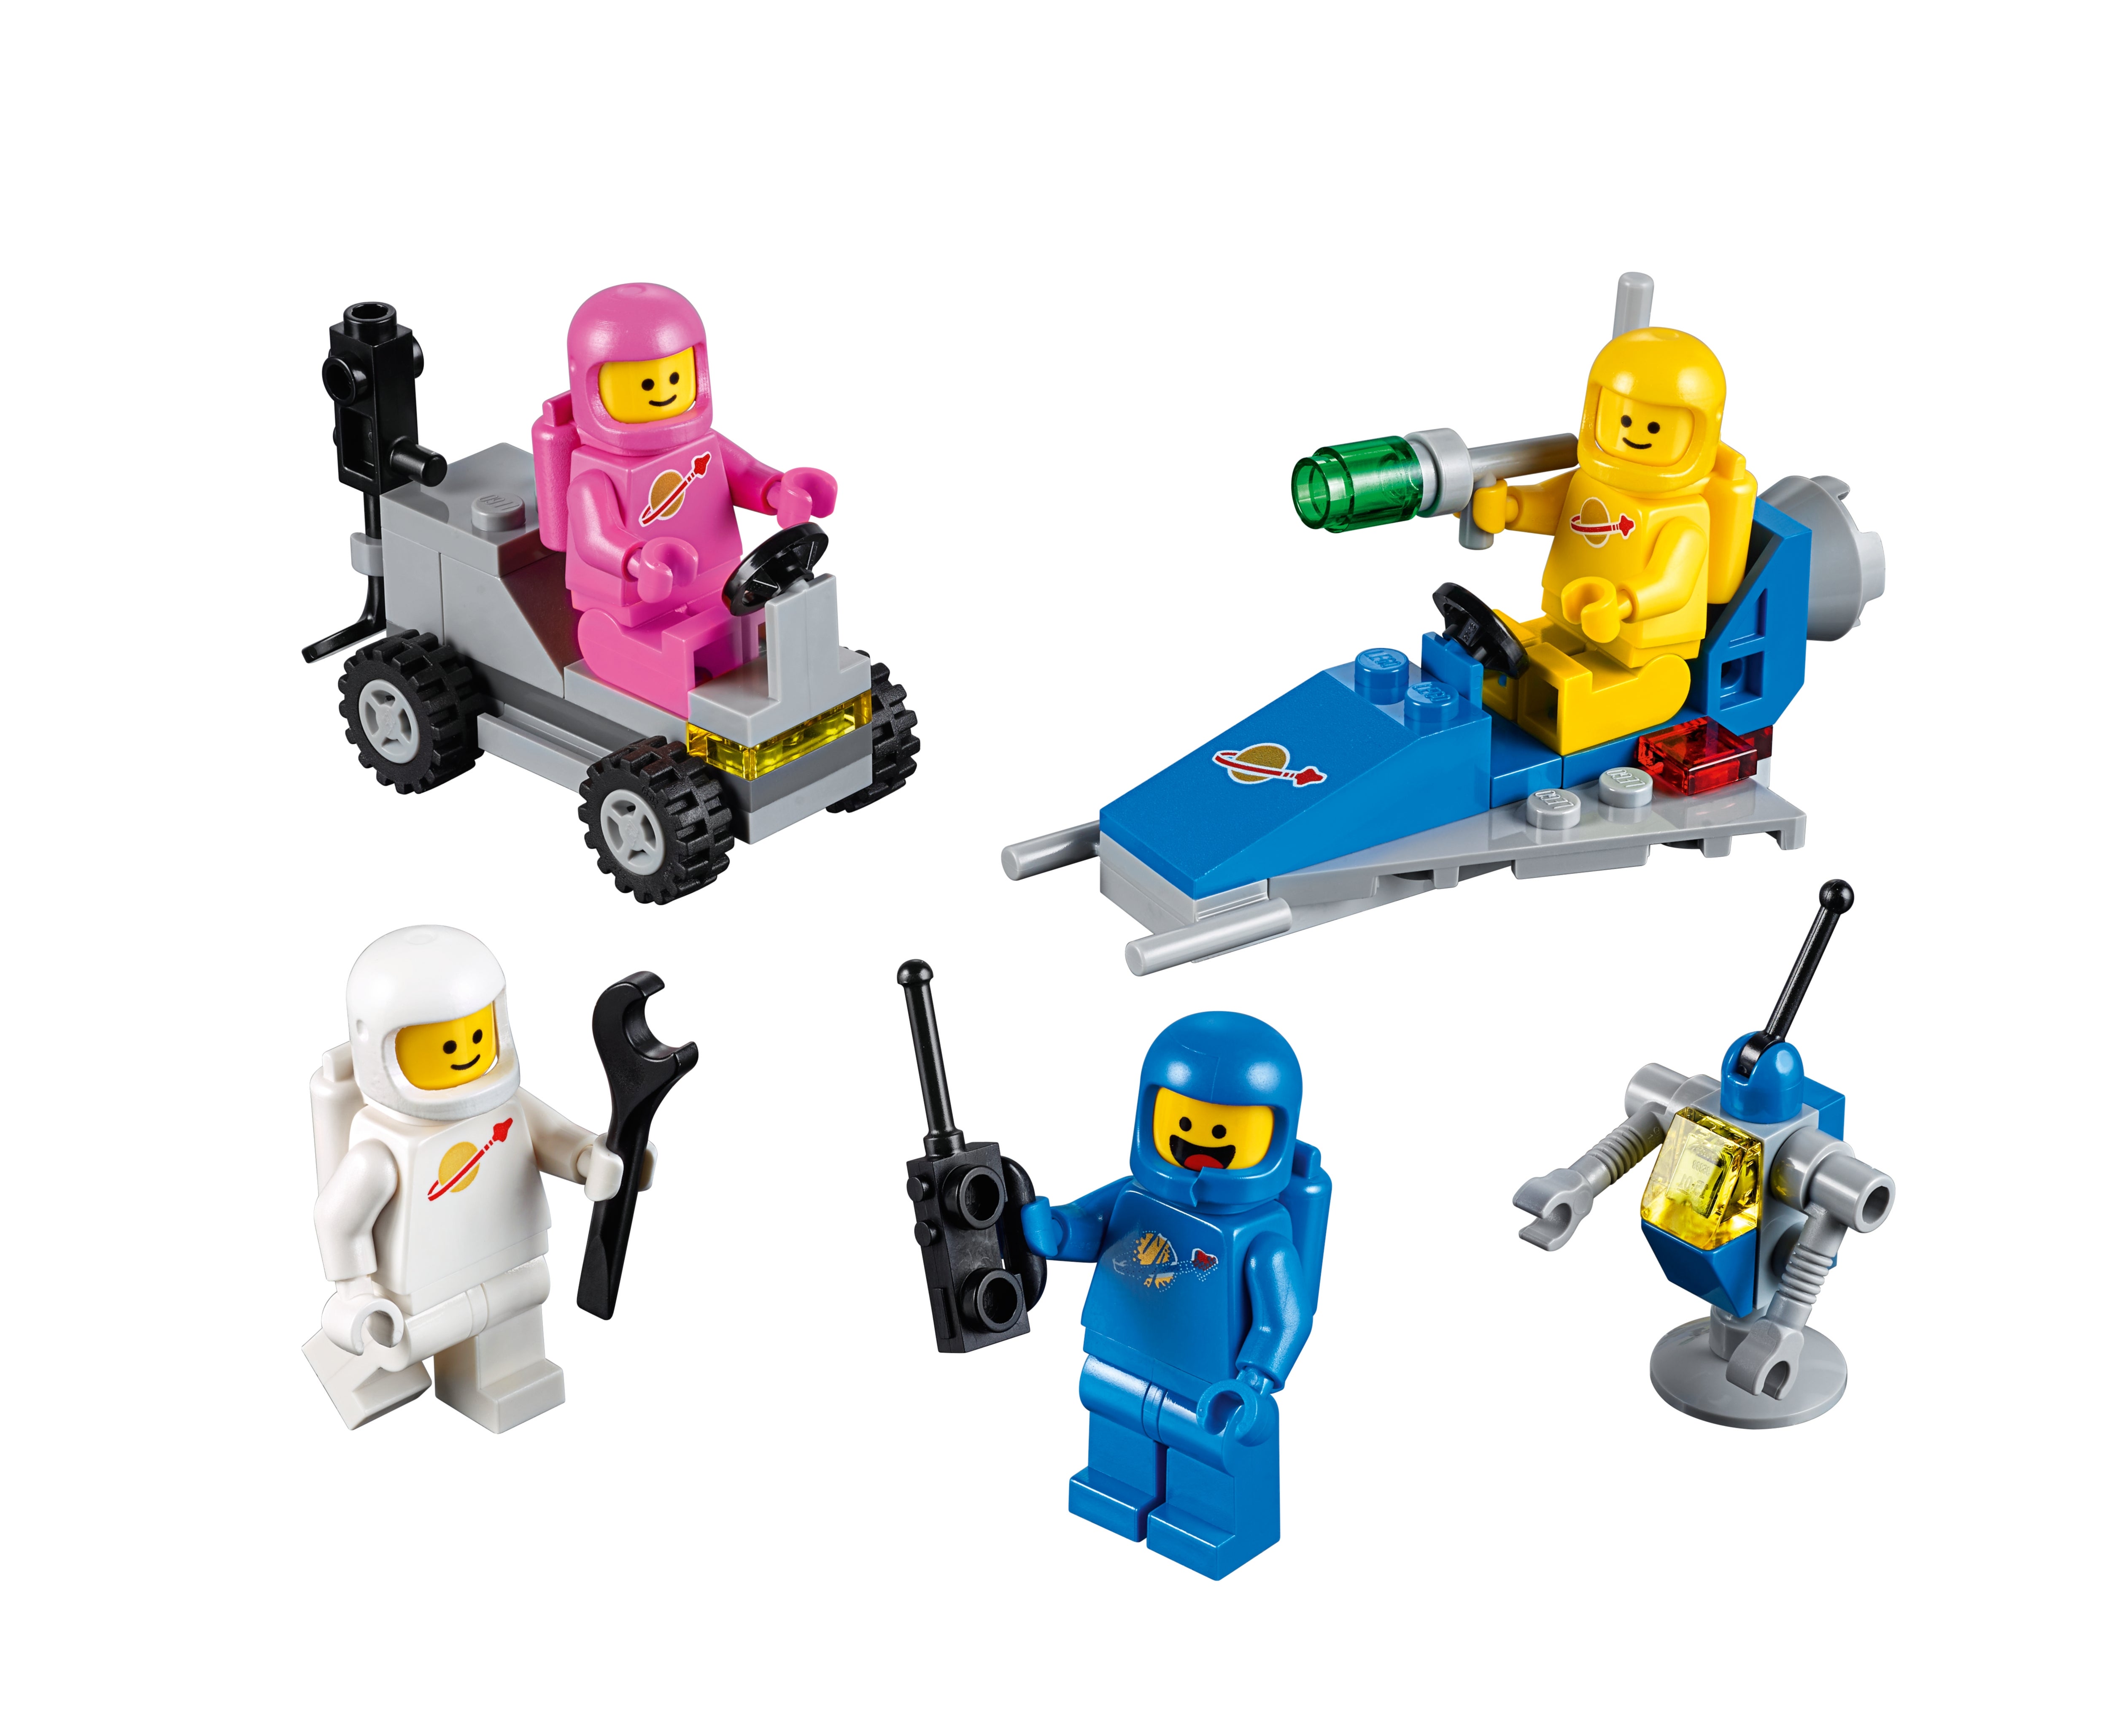 LEGO ® MOVIE 2 Set 70841 voitures l/'Espace-Équipe